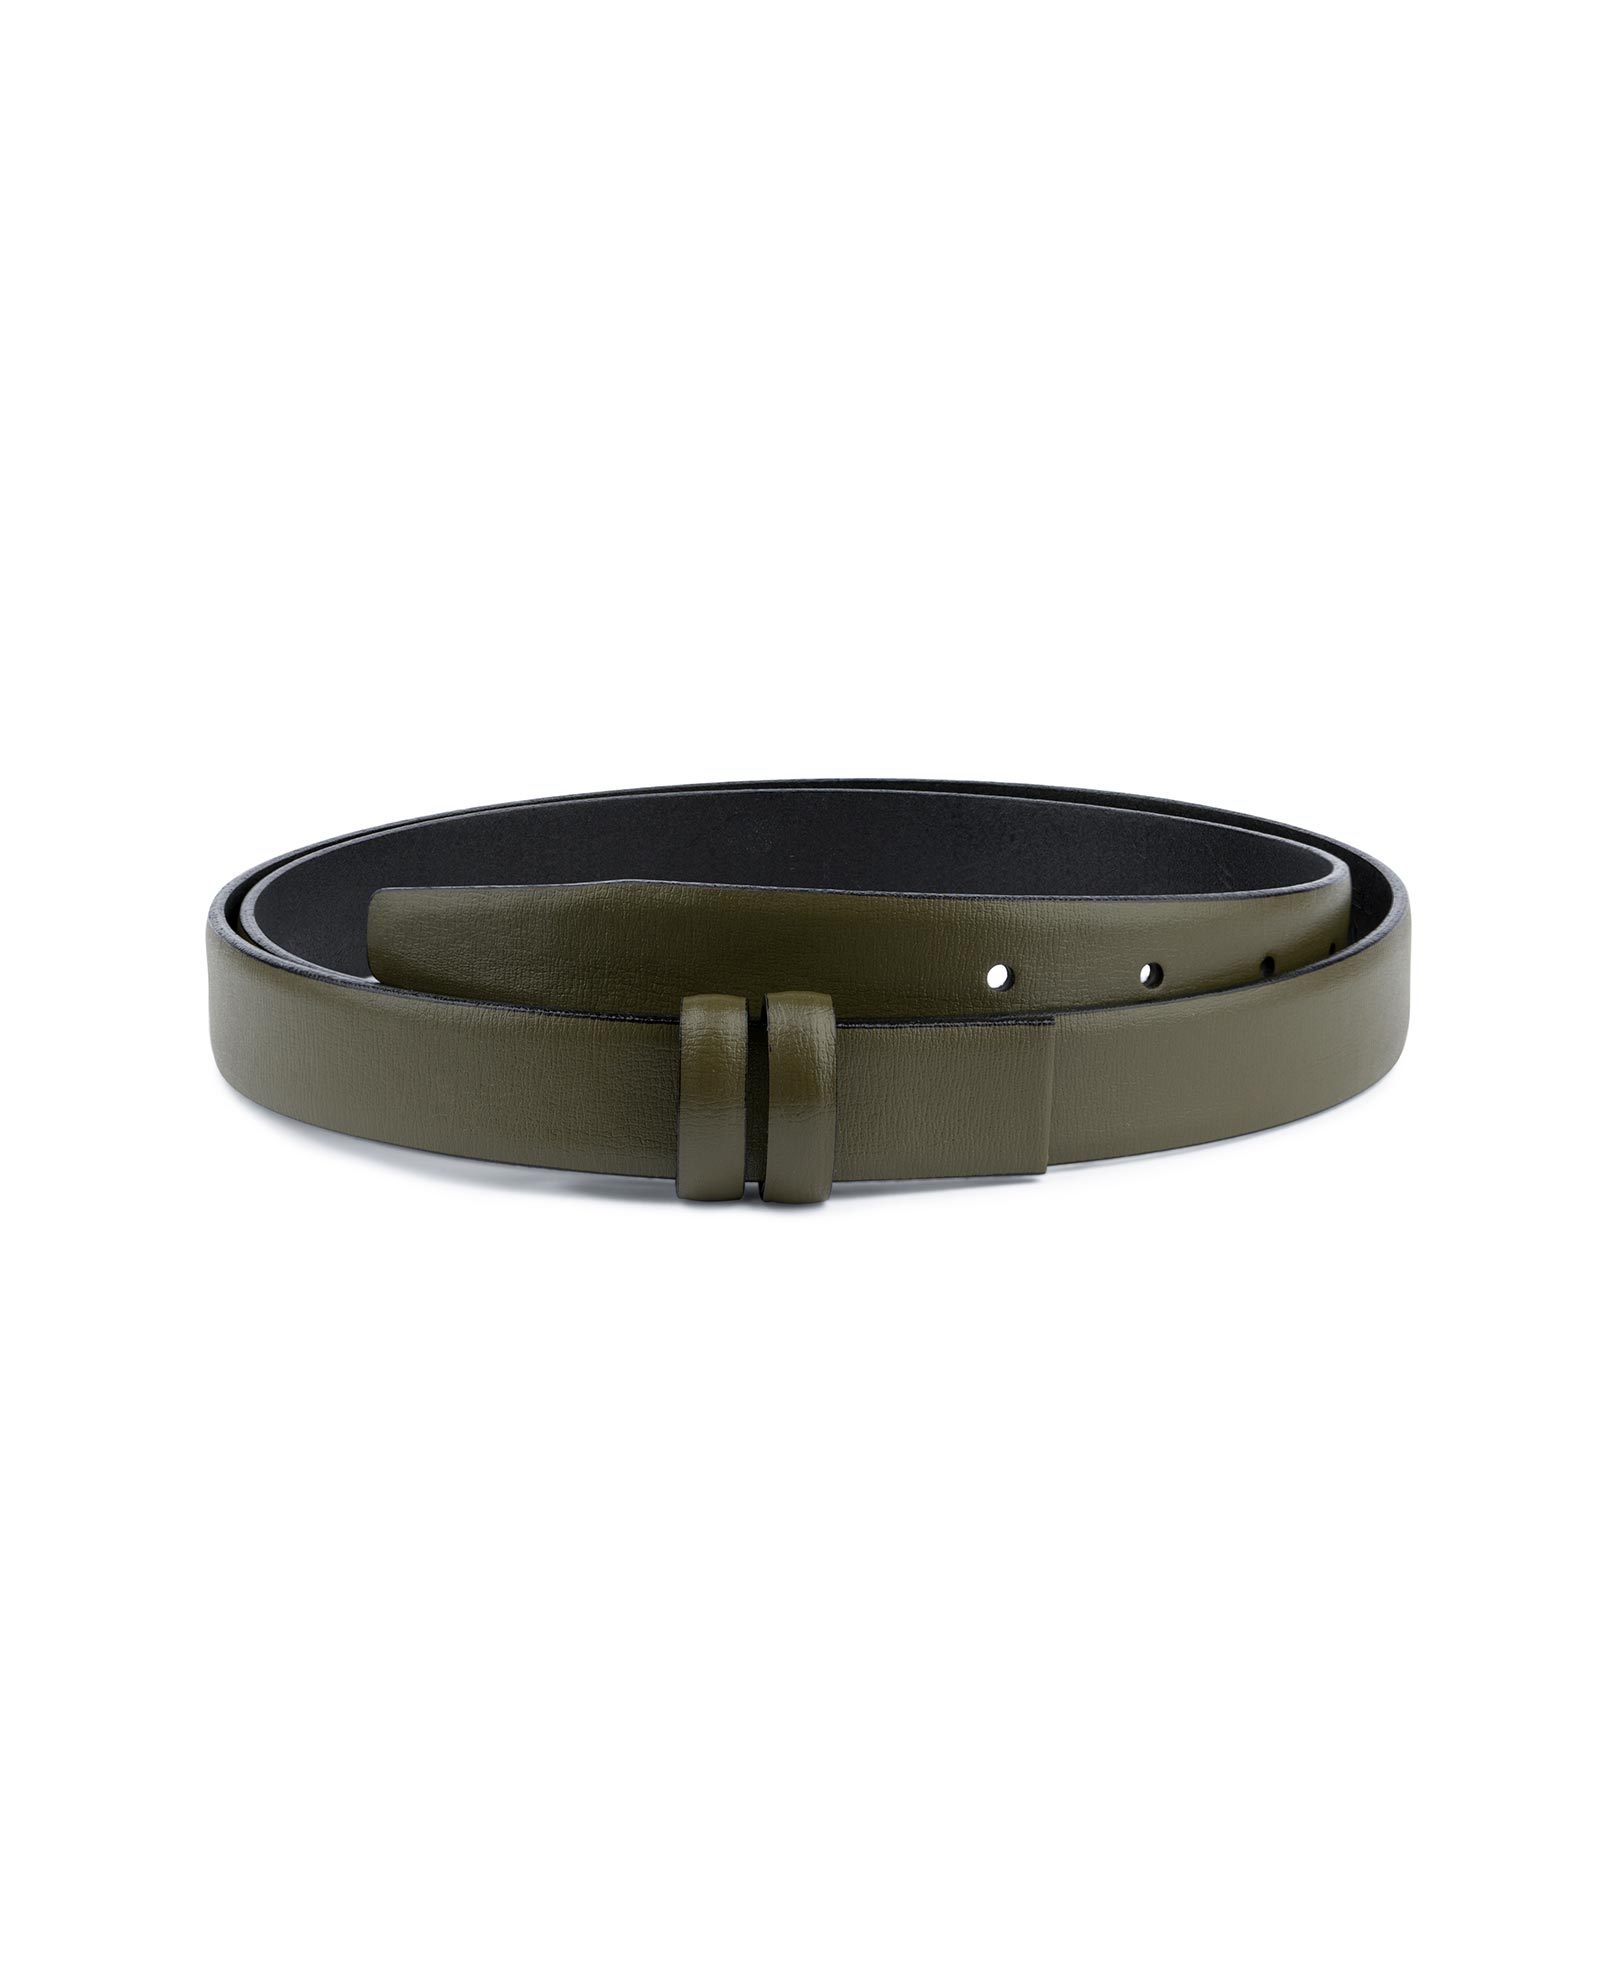 Buy Olive Green Belt for Buckles | 1 inch wide | LeatherBeltsOnline.com